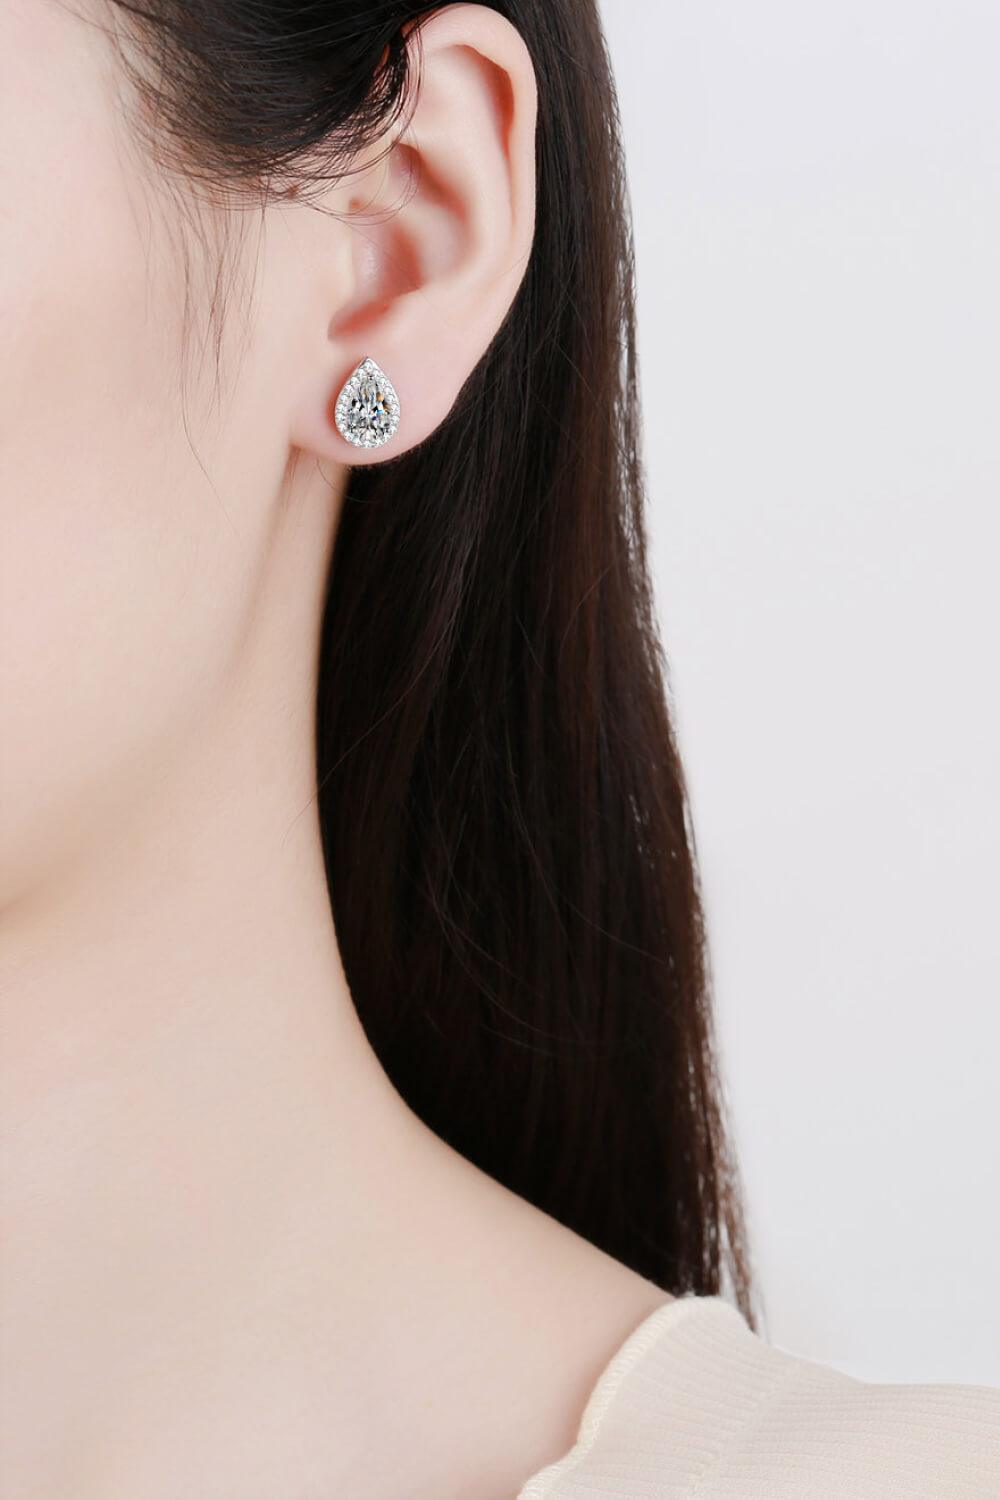 Exquisite Teardrop 2 Carat Moissanite Stud Earrings - MXSTUDIO.COM